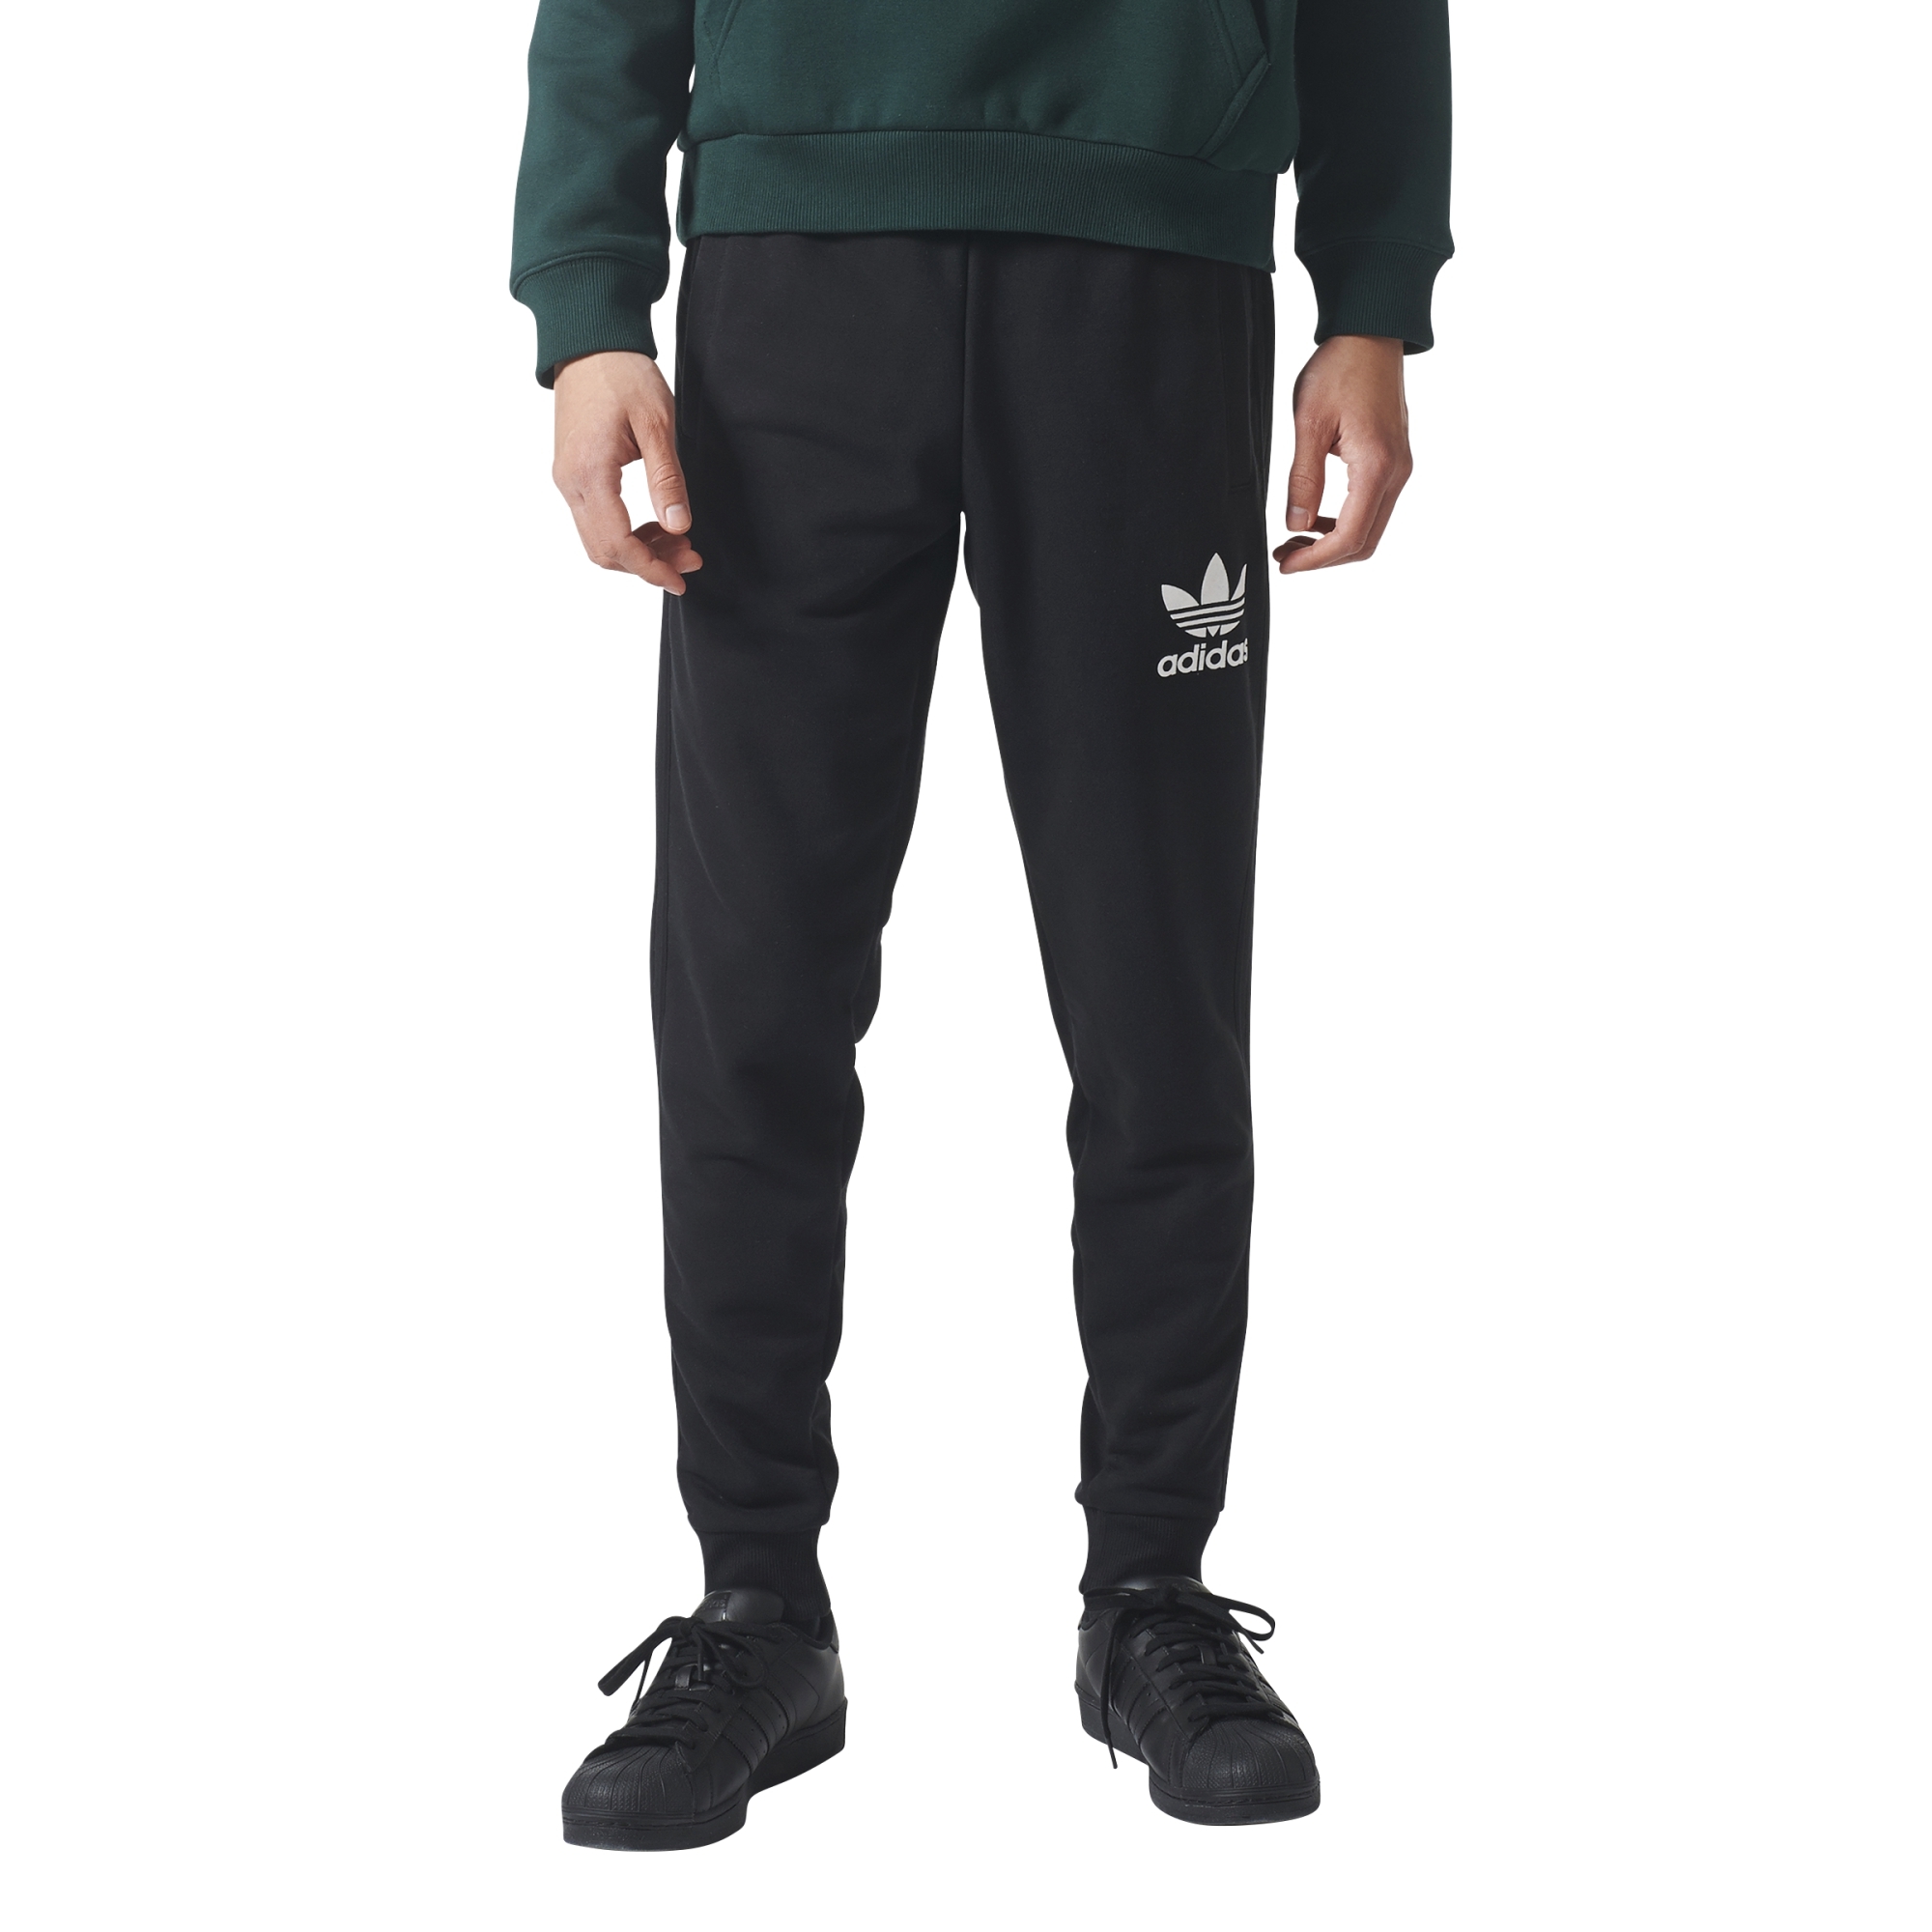 Hablar en voz alta Inocencia Contento Adidas Originals 3 Stripe Cuffed Sweatpants (black)